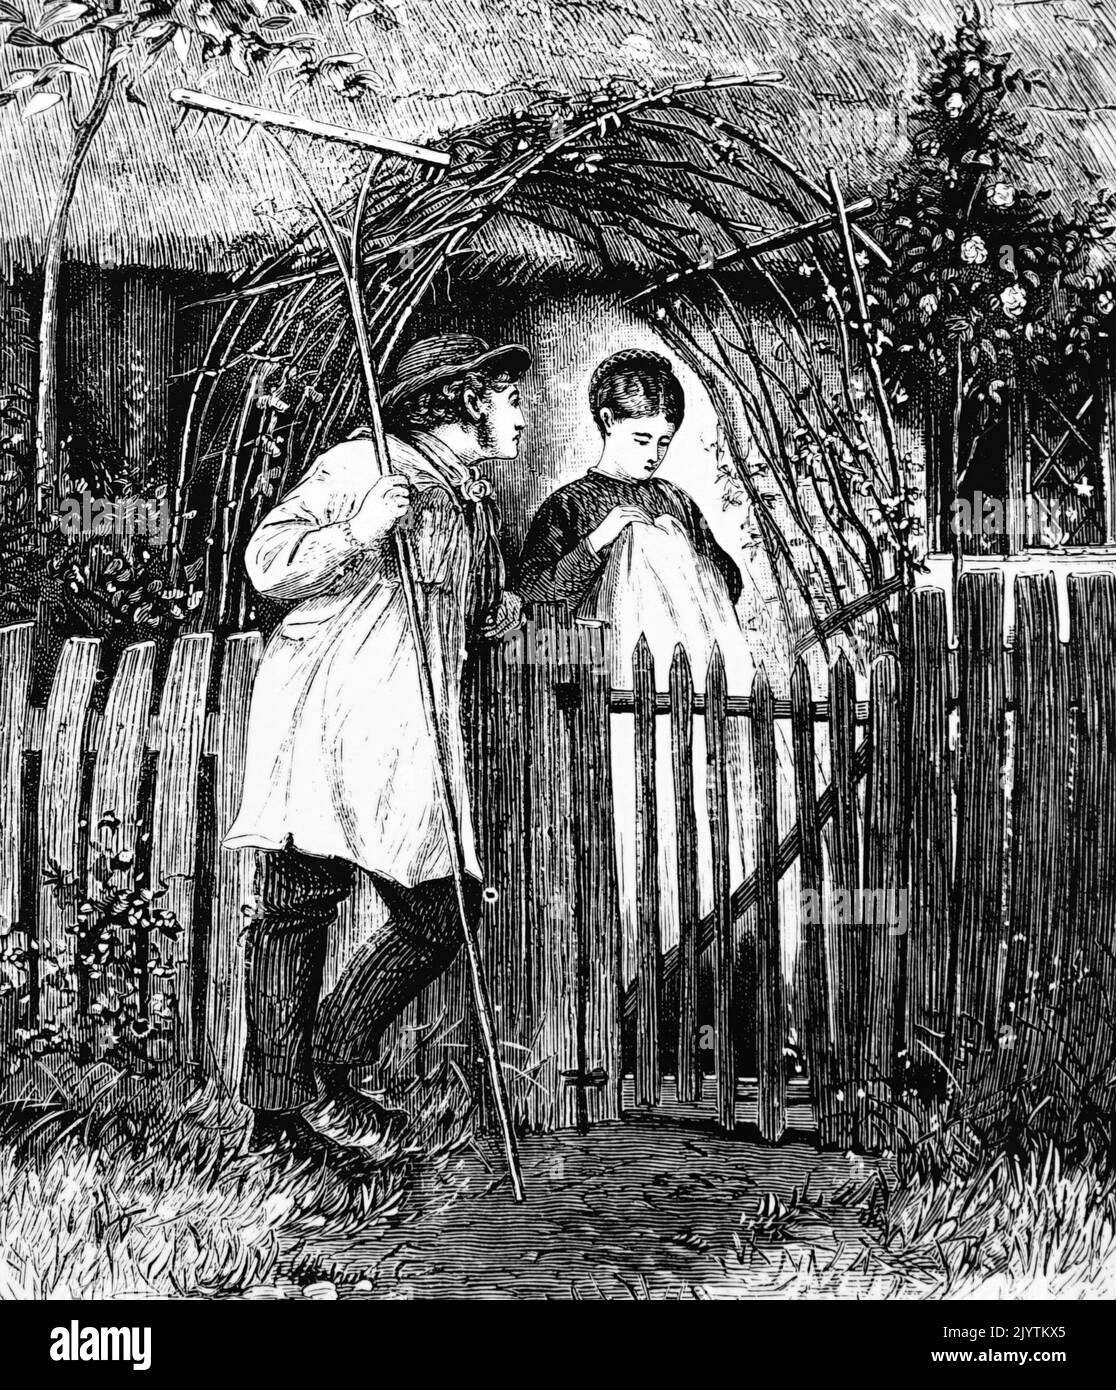 Illustrazione raffigurante un operaio agricolo in un fumetto che corteggiava il suo amante. Illustrato da Henry Woods (1846-1921) pittore e illustratore inglese. Datato 19th ° secolo Foto Stock